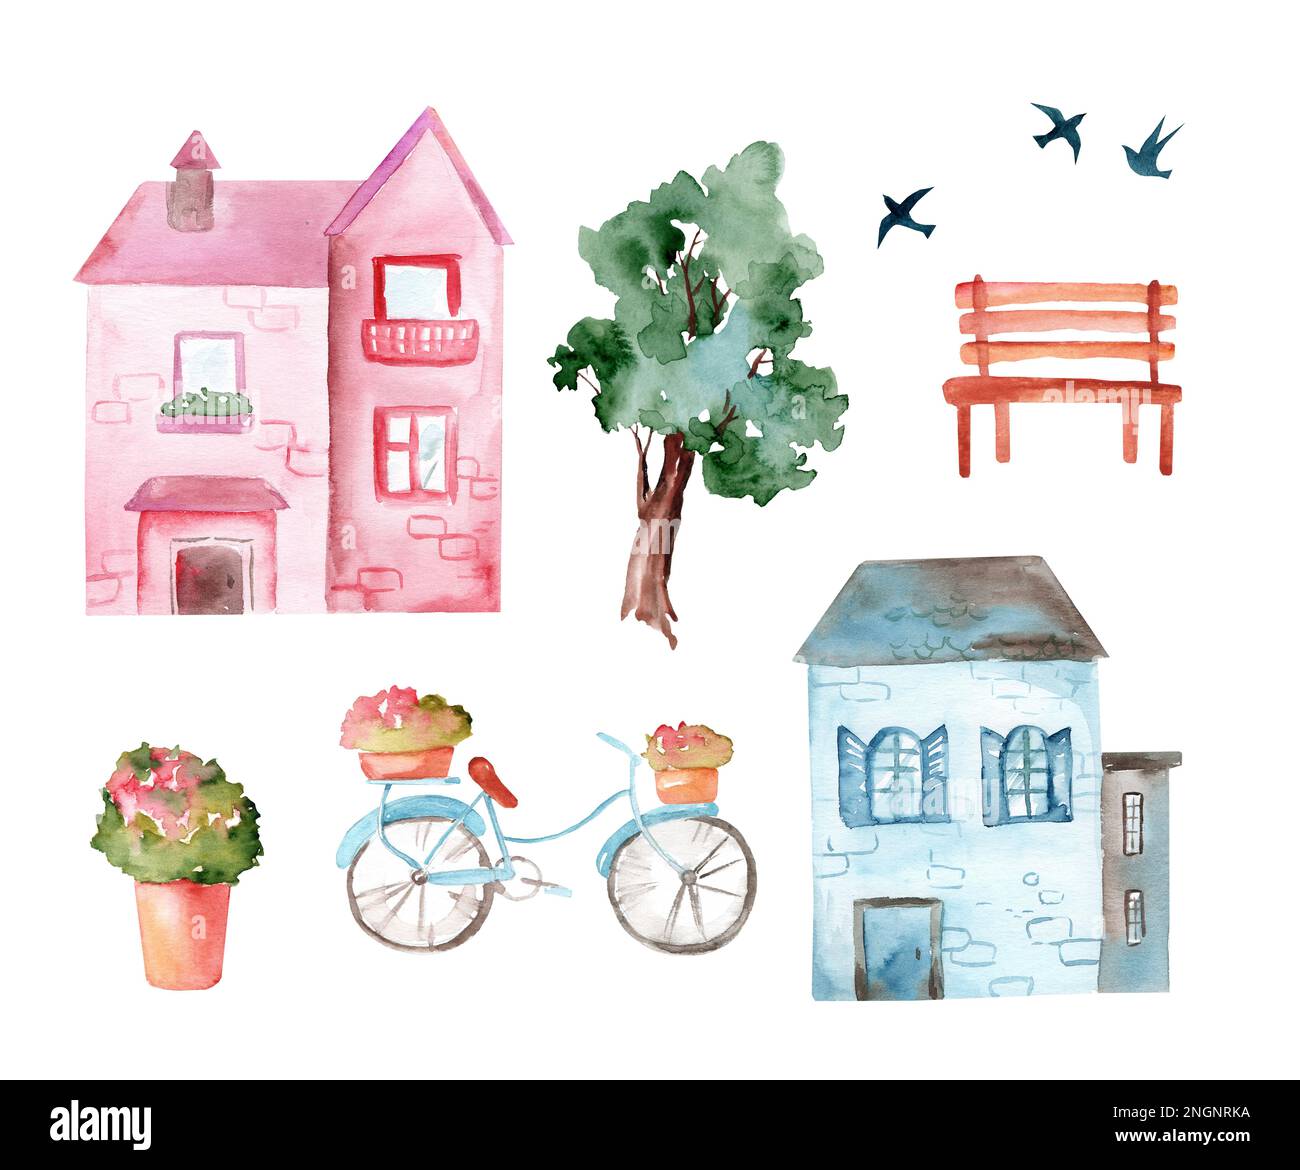 Ensemble de jolies maisons d'aquarelle de dessin animé, lits de fleurs et arbres, banc, vélo, peinture anglaise sur fond blanc Banque D'Images